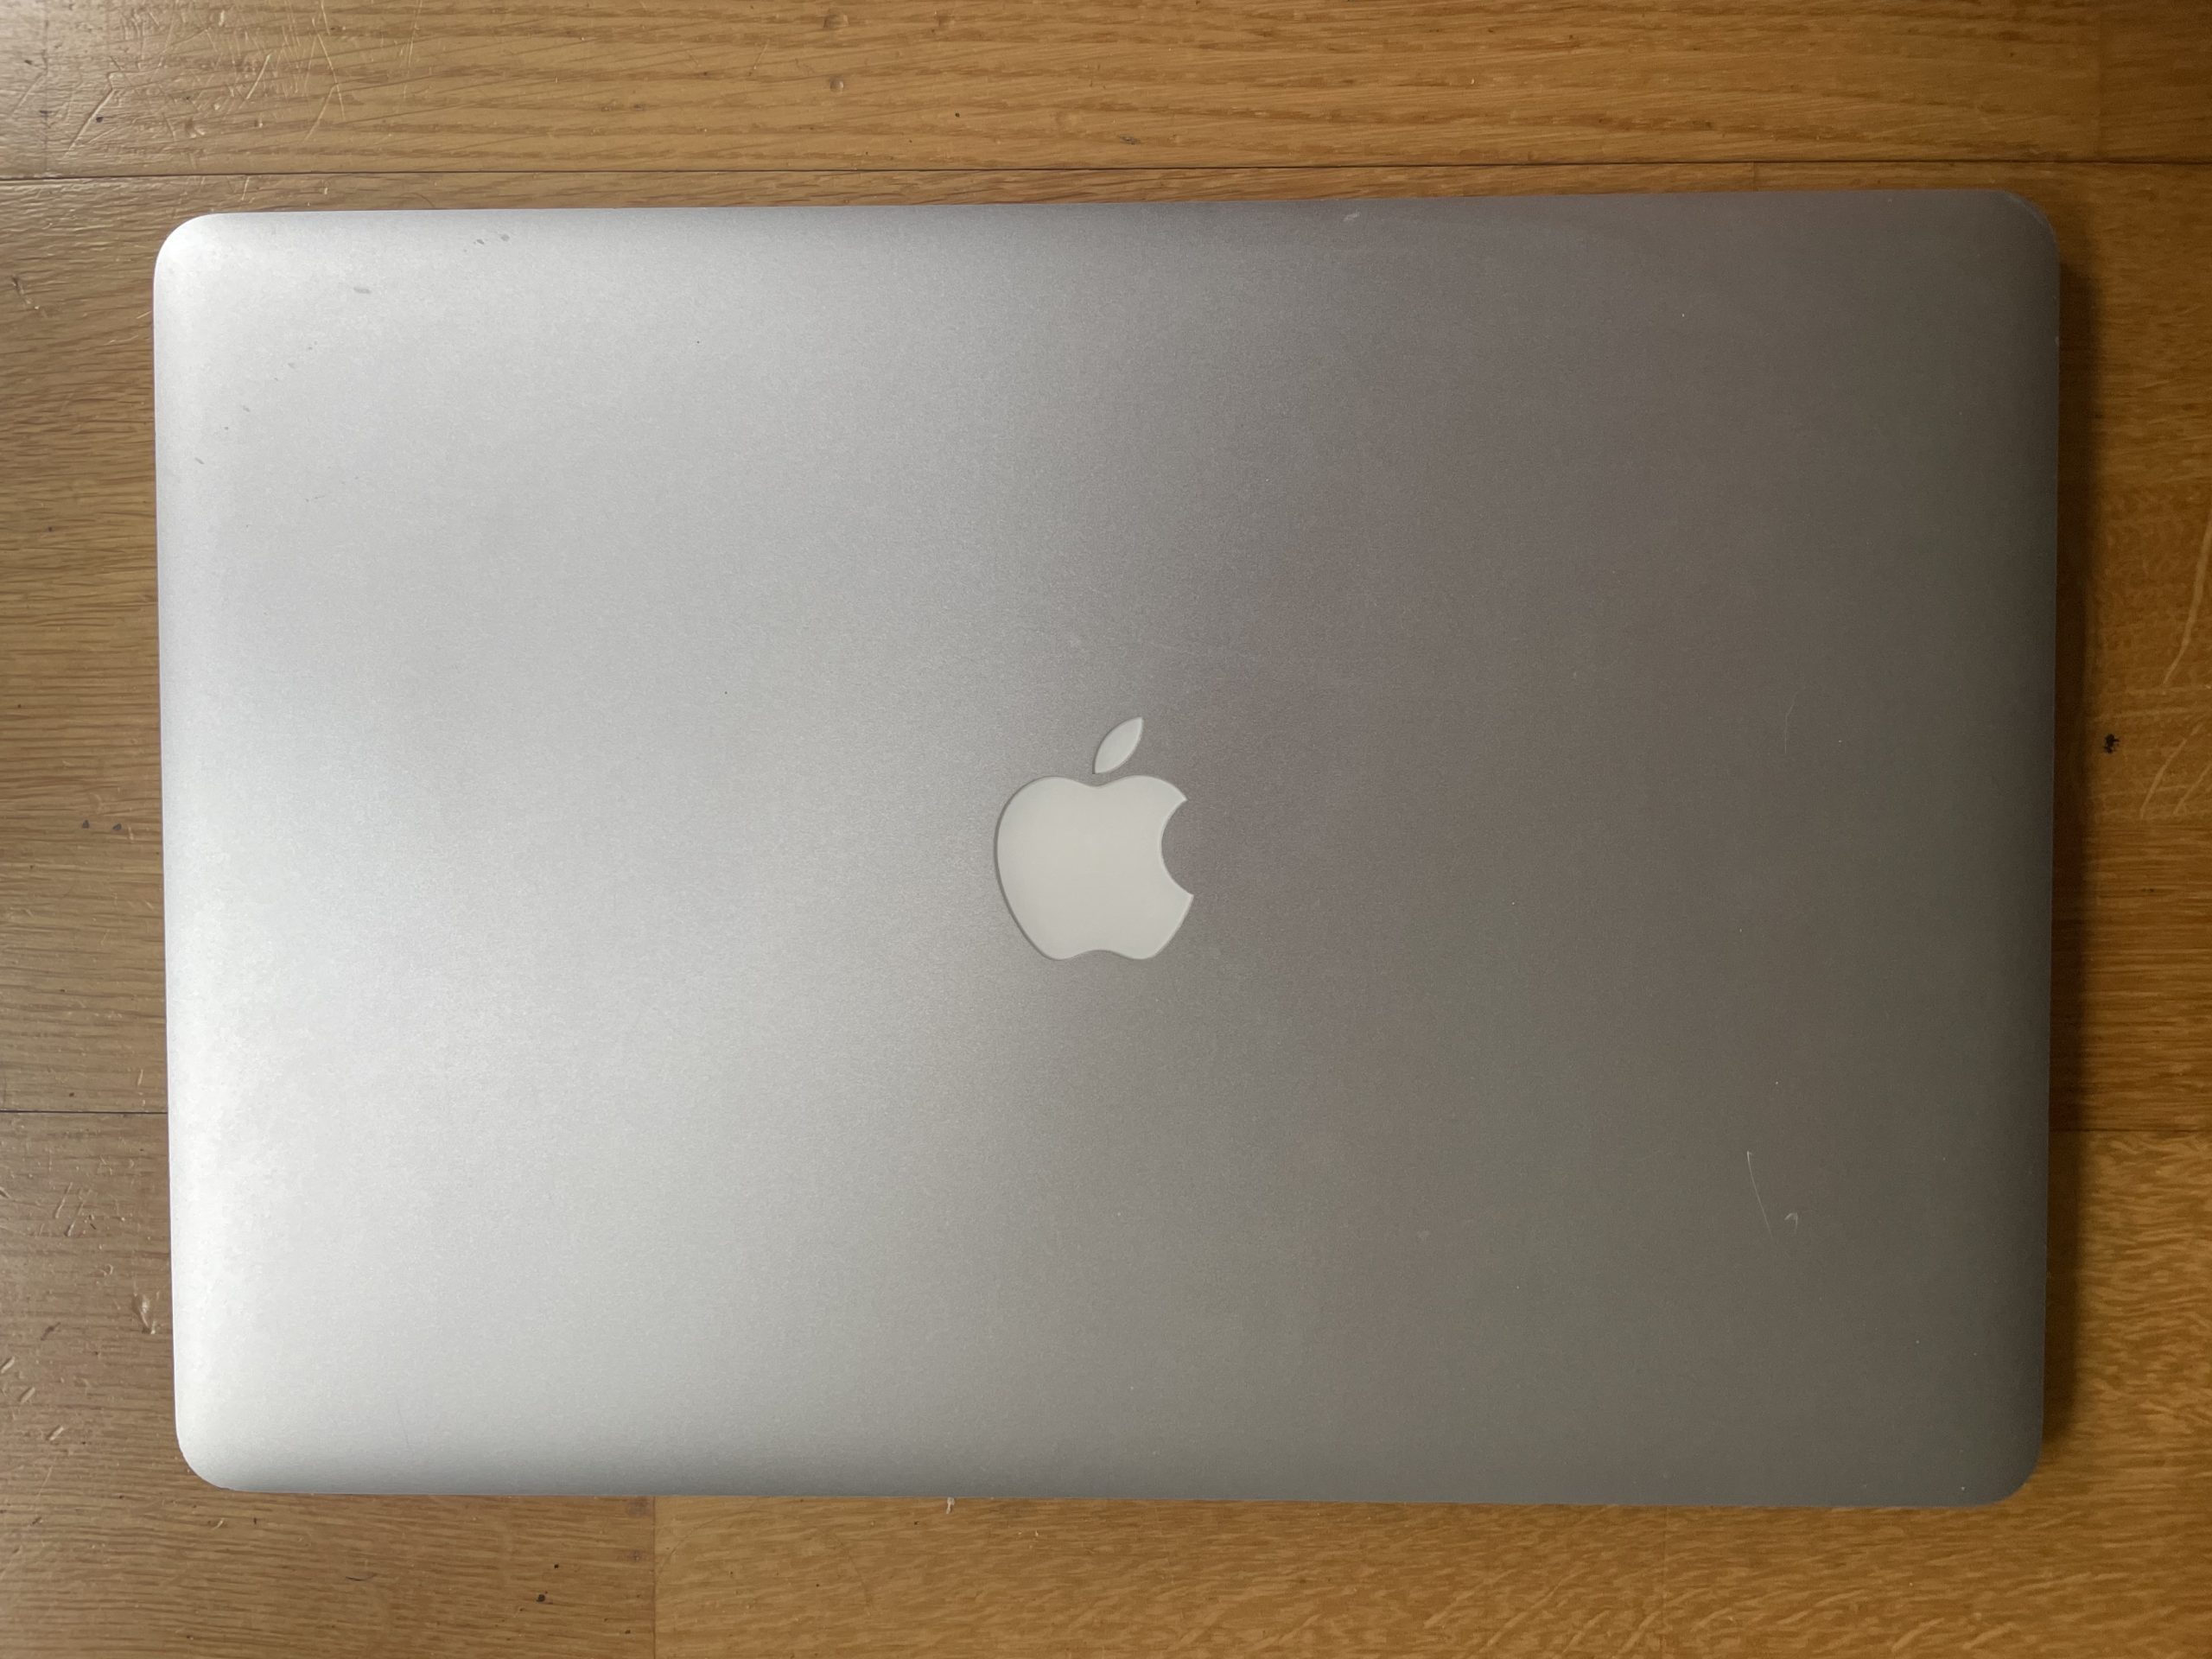 MacBook Pro 15 pouces 2,4ghz i7 deb 2013 256goSSD